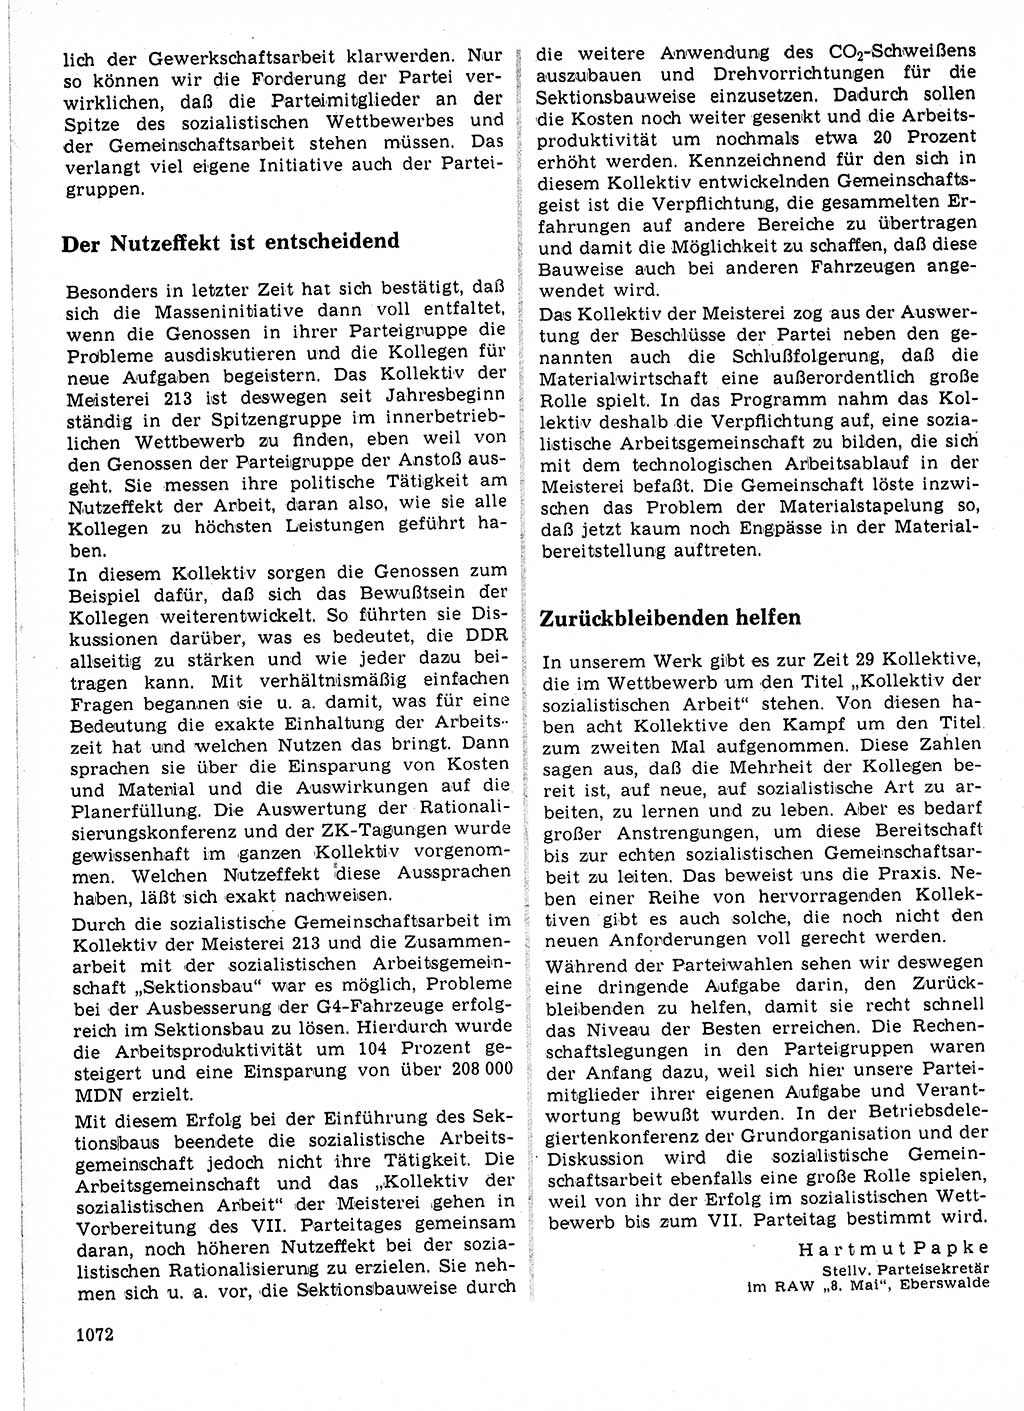 Neuer Weg (NW), Organ des Zentralkomitees (ZK) der SED (Sozialistische Einheitspartei Deutschlands) für Fragen des Parteilebens, 21. Jahrgang [Deutsche Demokratische Republik (DDR)] 1966, Seite 1072 (NW ZK SED DDR 1966, S. 1072)